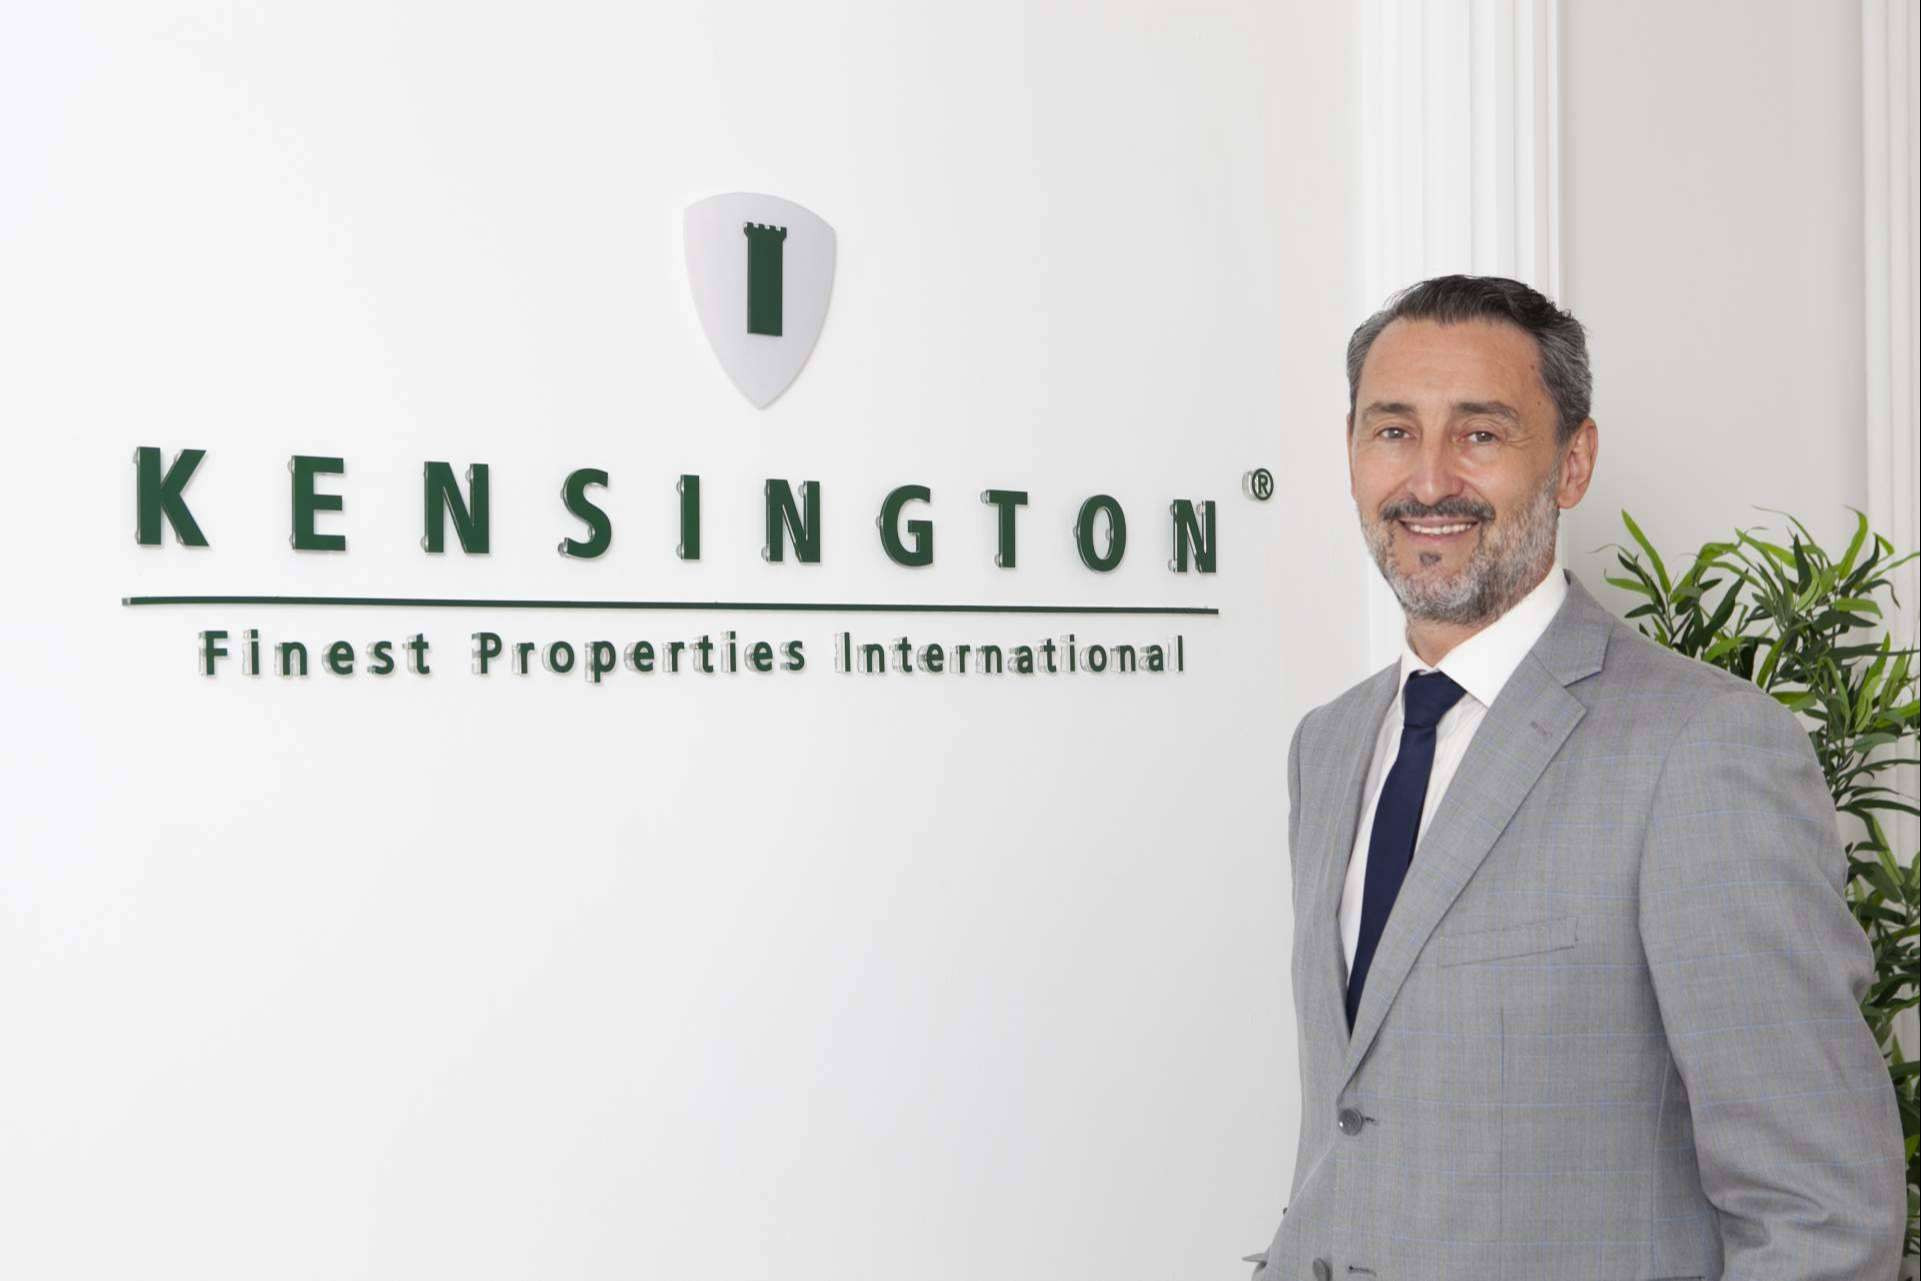  La máster franquicia de Madrid, el inicio de la expansión de Kensington Finest Properties International en la península 